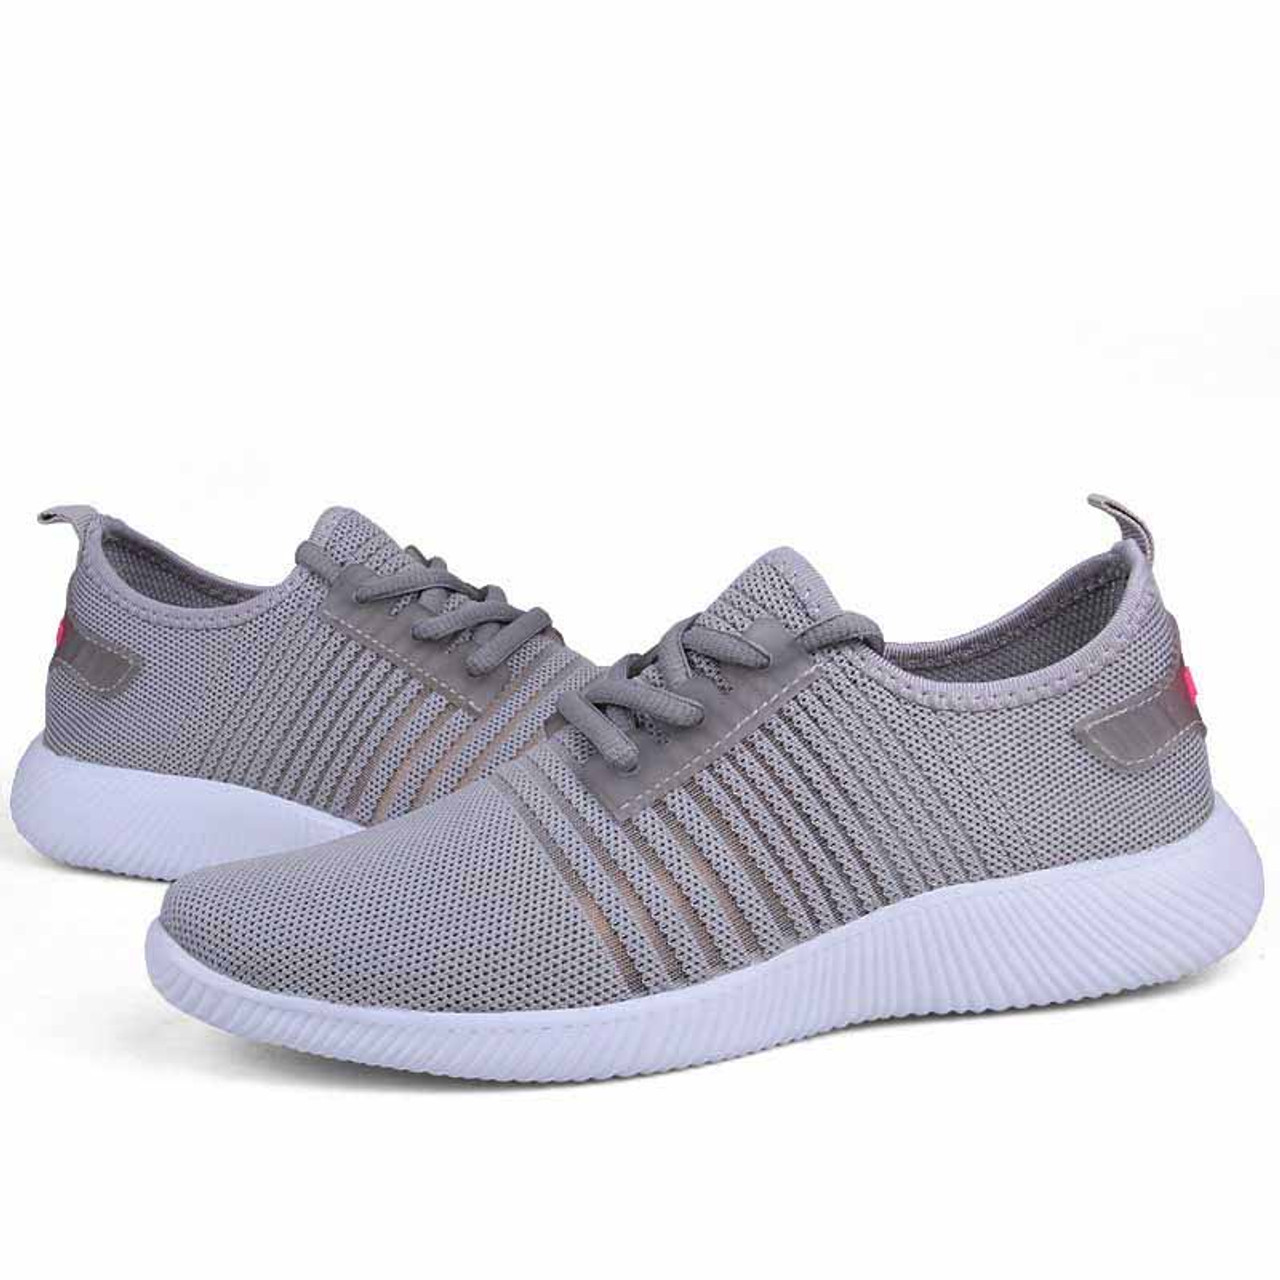 Grey stripe detail flyknit shoe sneaker | Womens sneakers shoes online ...